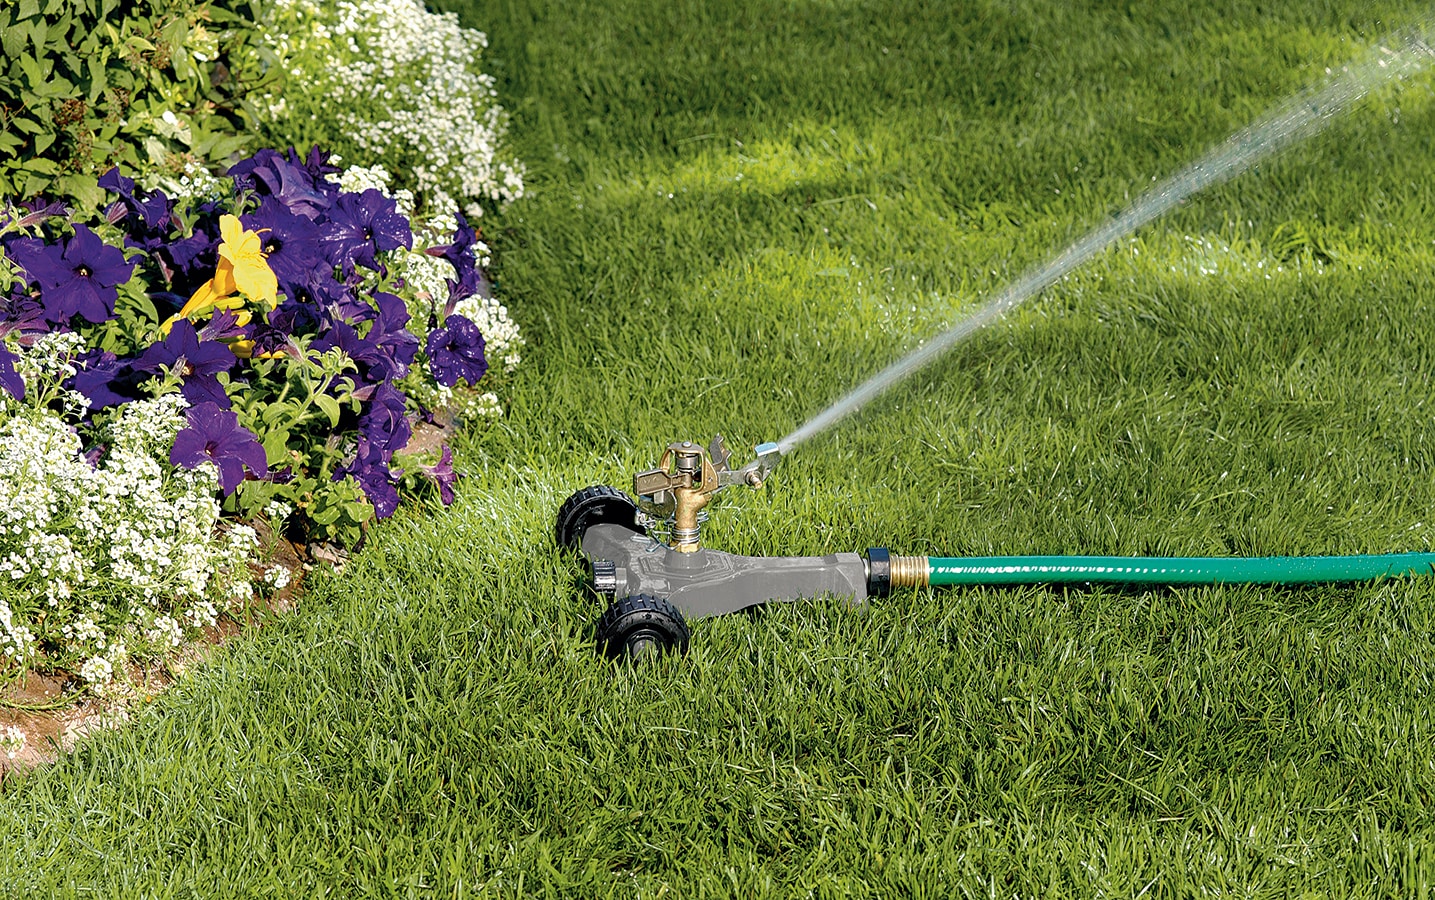 4000 Sq. Ft. Adjustable Impact Watering Sprinkler on Zinc Spike